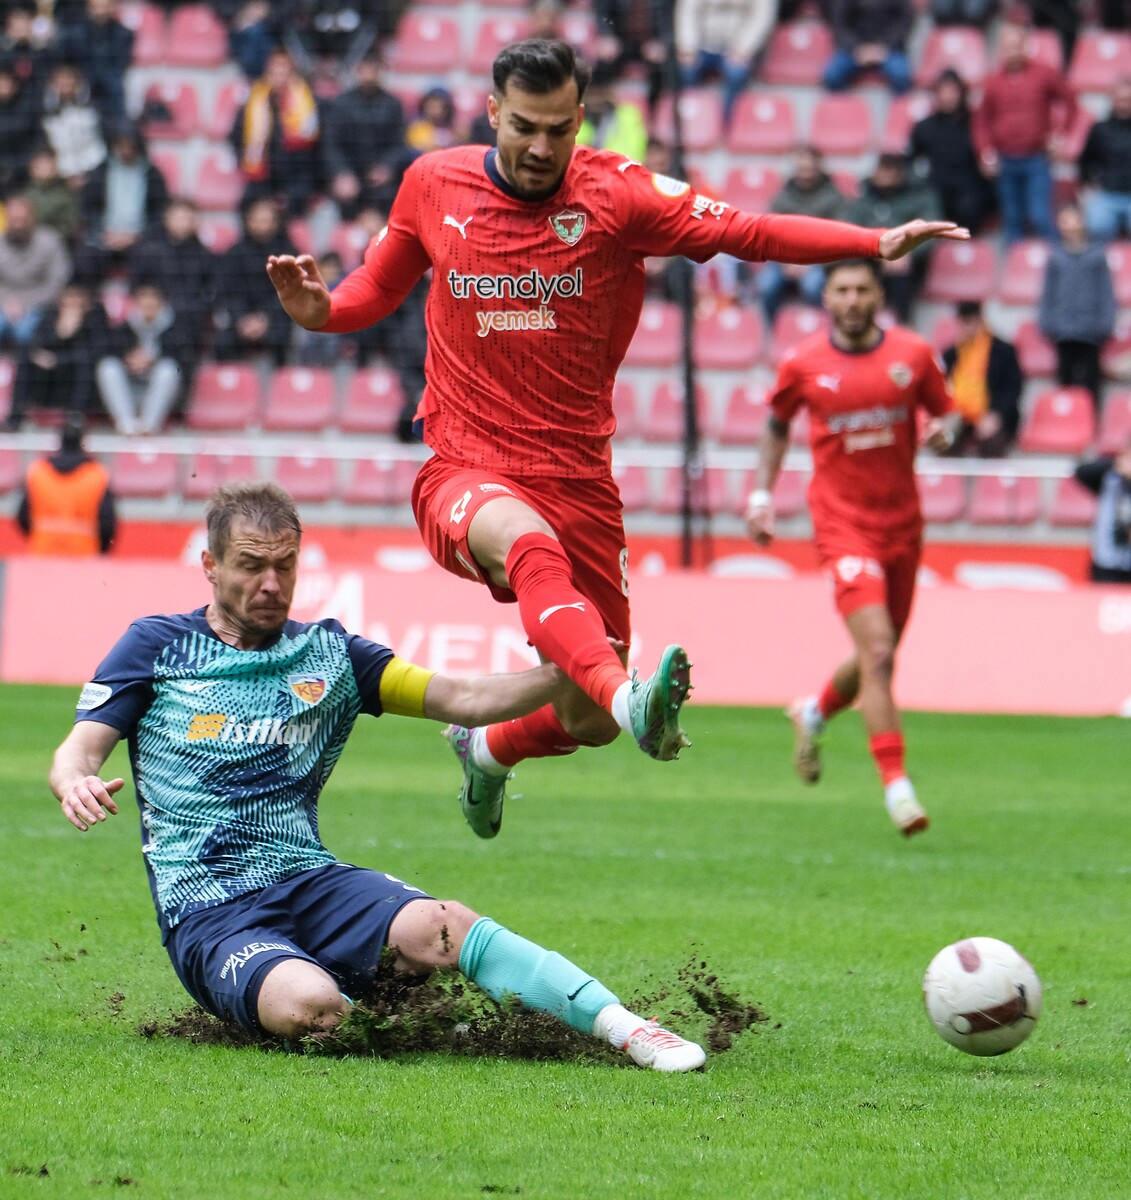 Kayserispor-Hatayspor maçından kazanan çıkmadı